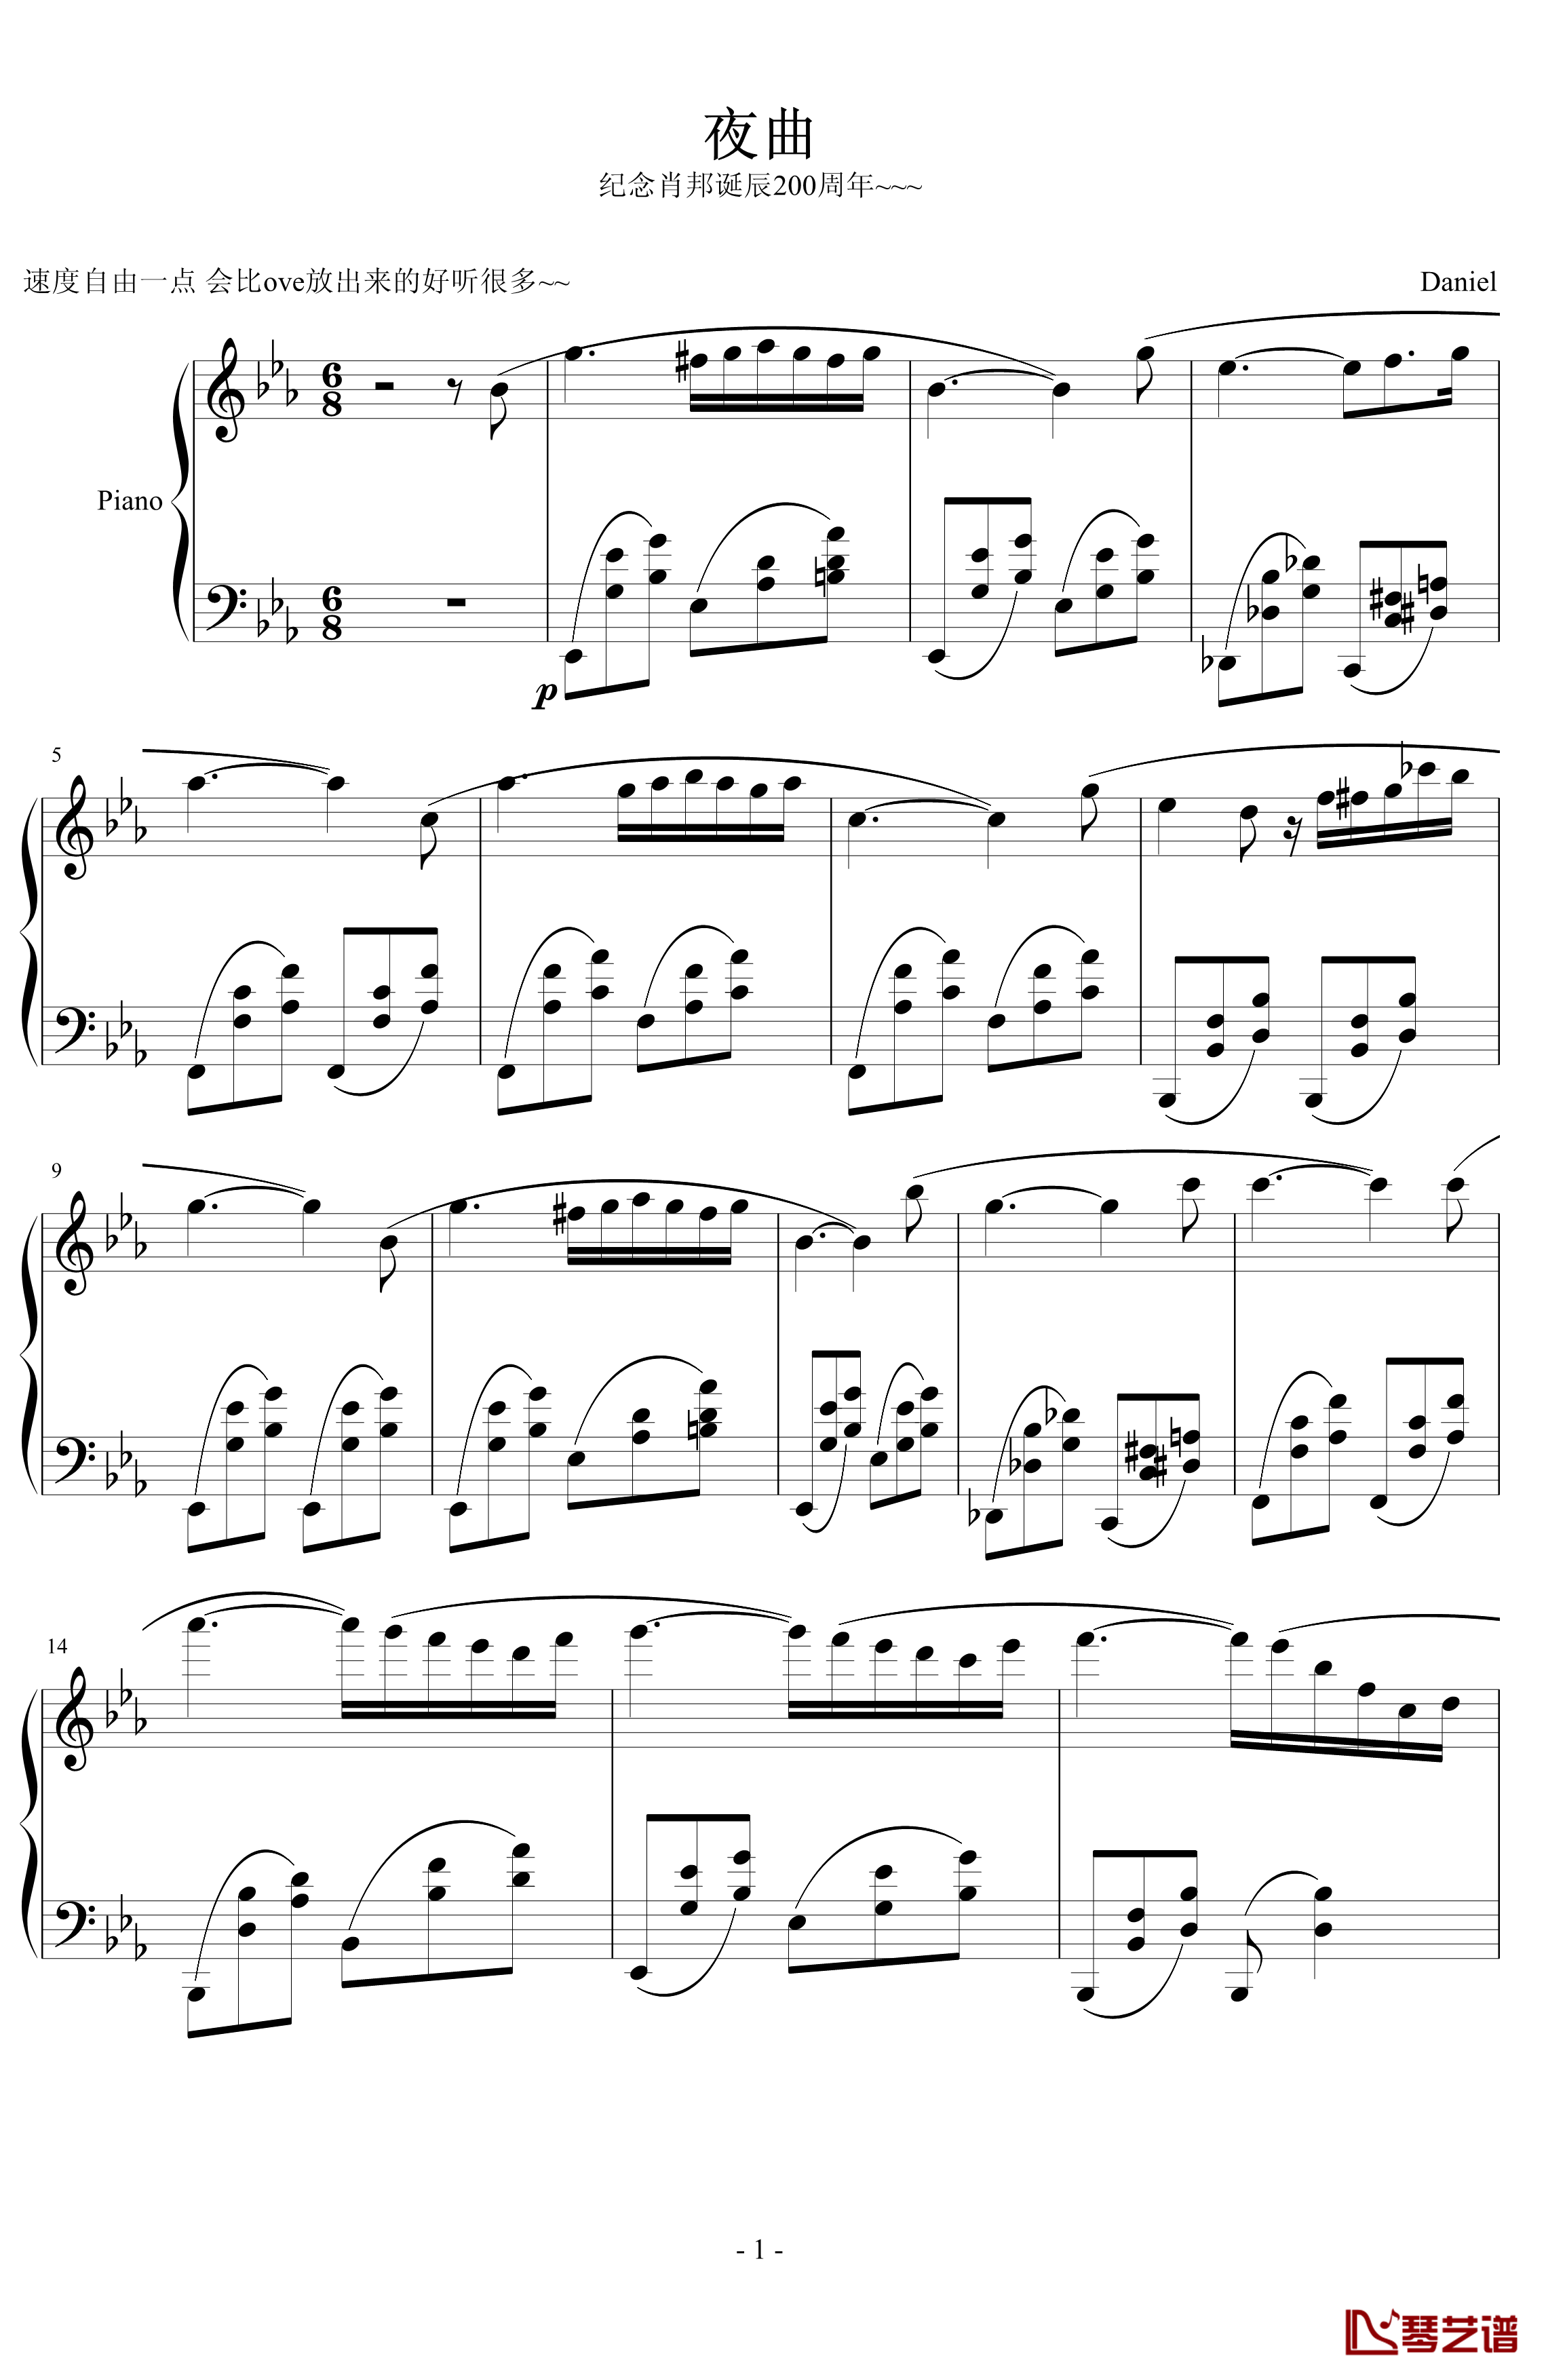 夜曲钢琴谱-纪念肖邦-Daniel1